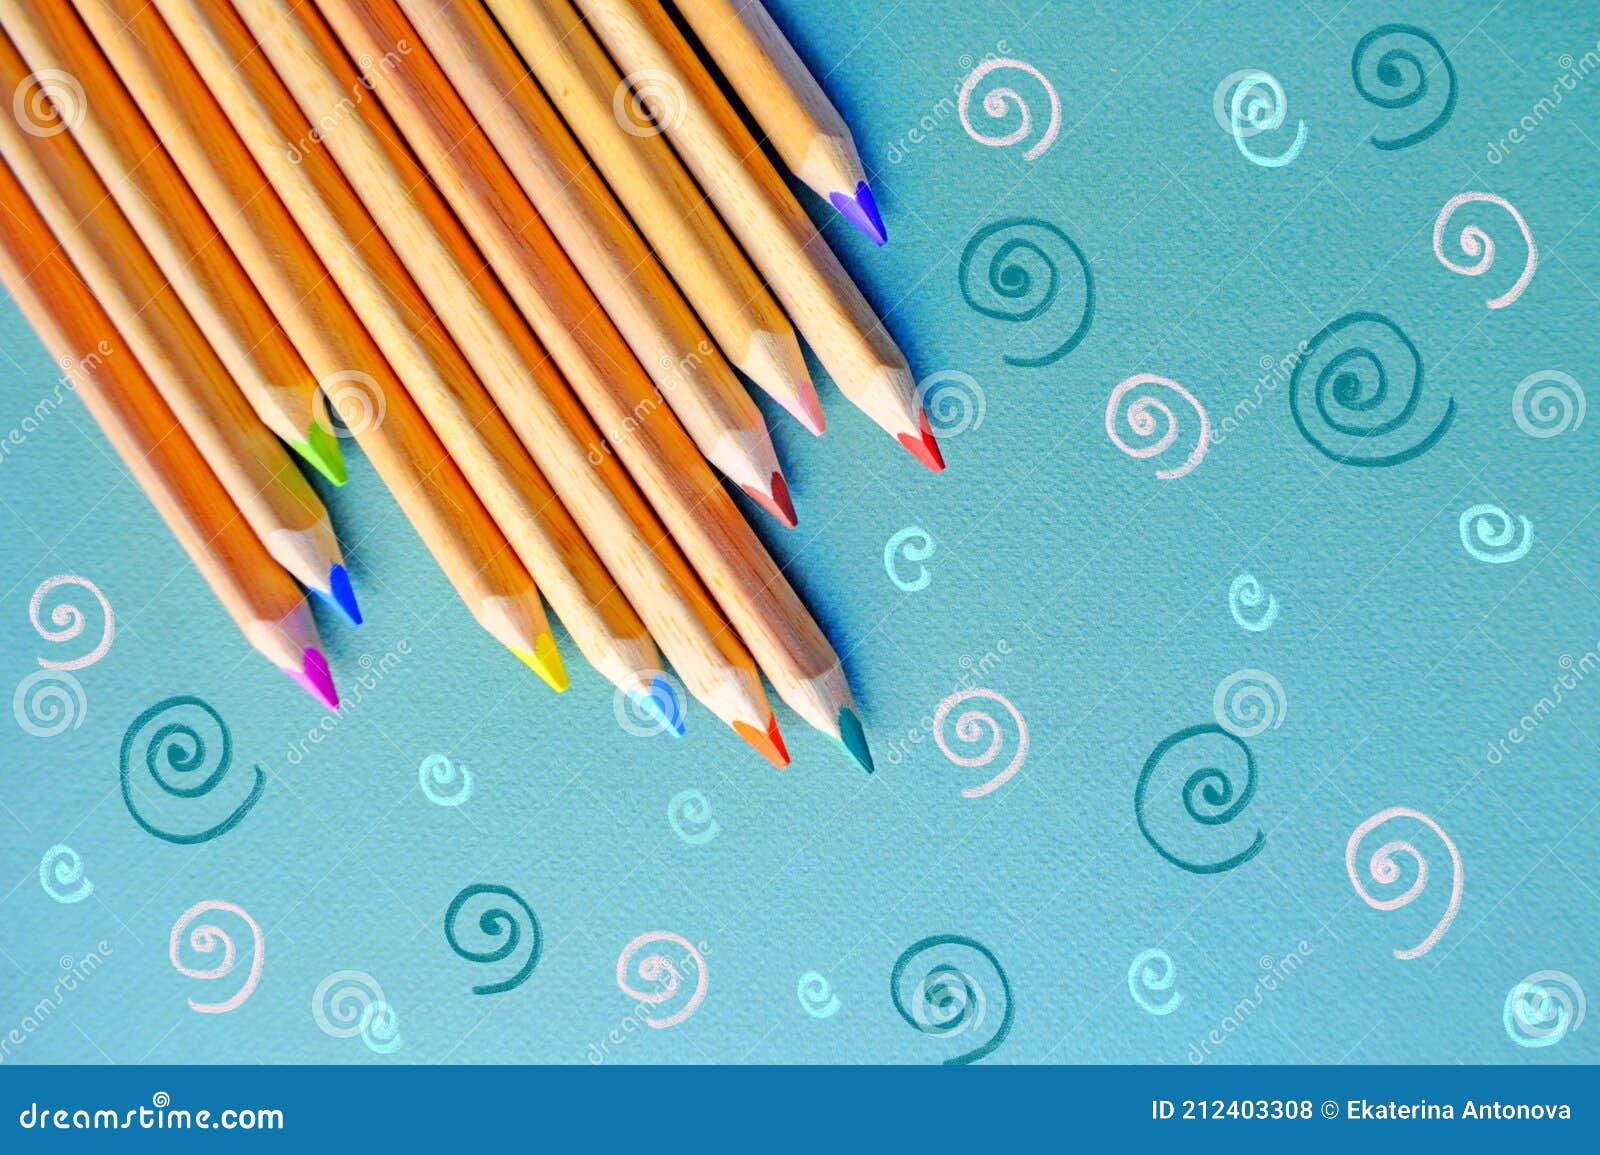 Composición De Lápices De Colores Con Lápices De Colores Para Niños. Foto  de archivo - Imagen de arte, composiciones: 212403308